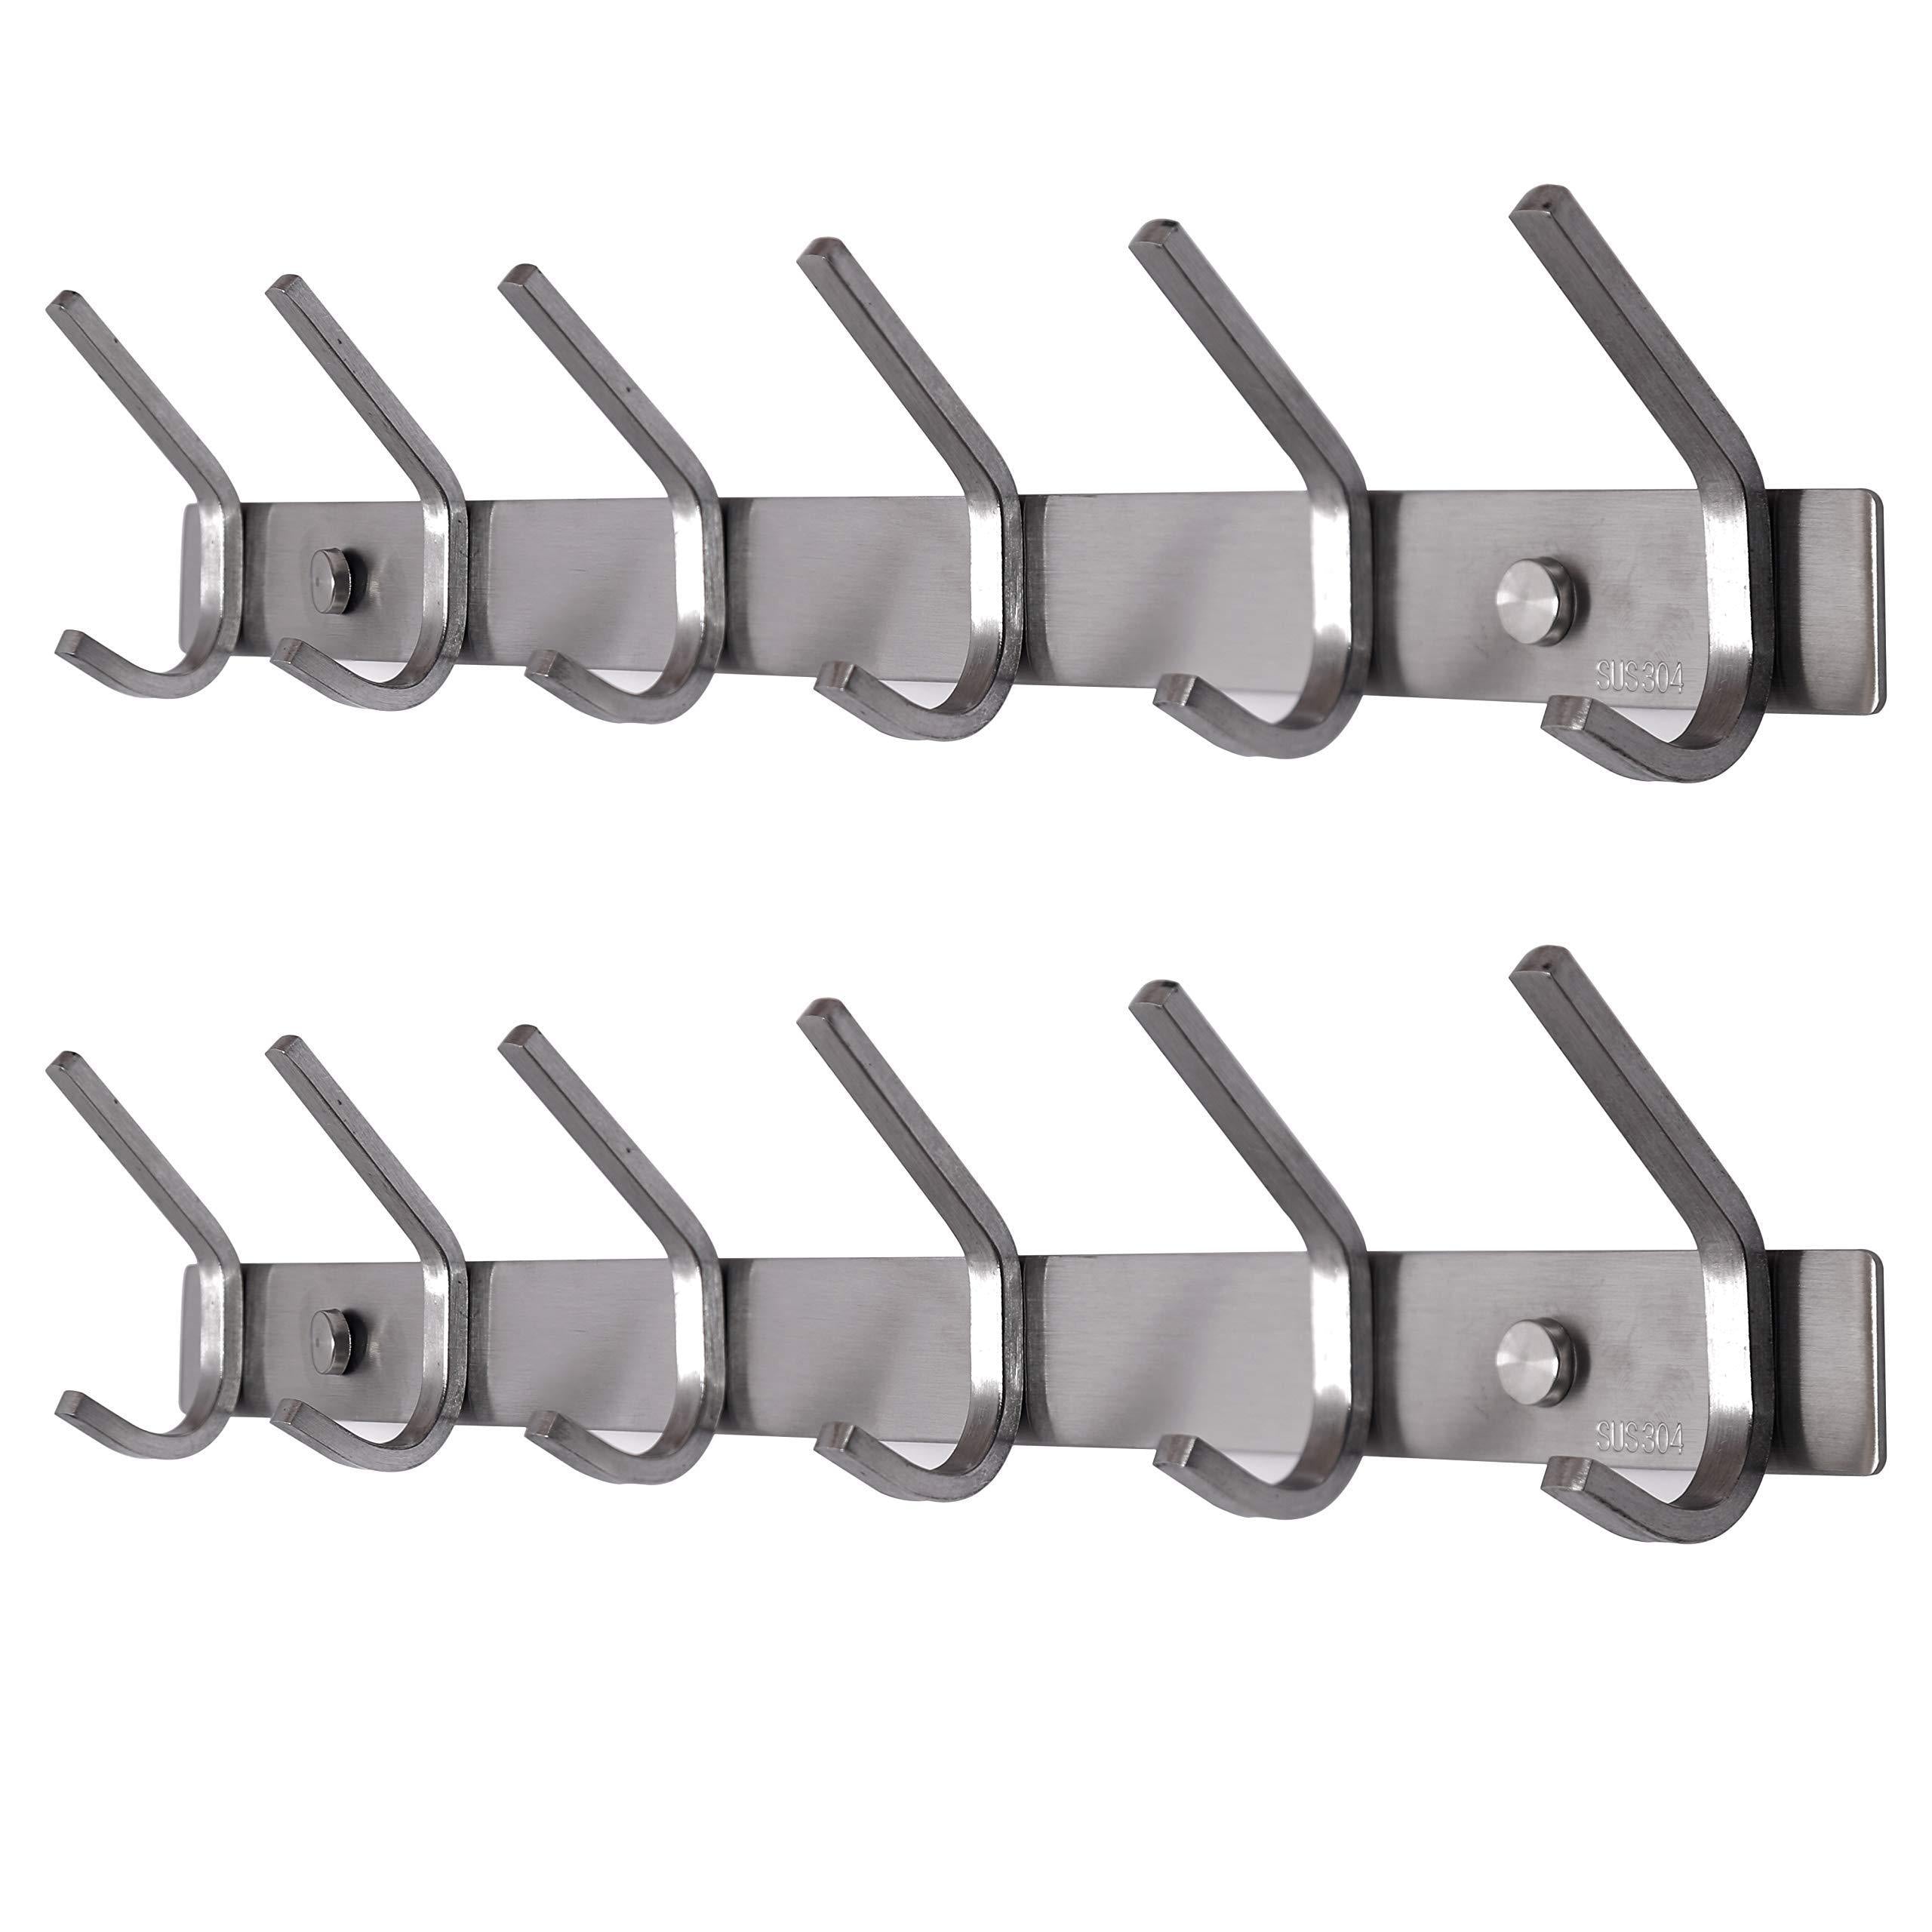 Related dseap wall mounted coat rack 6 hooks stainless steel 304 metal hook rail hook rack coat hooks bath towel hooks 2 packs